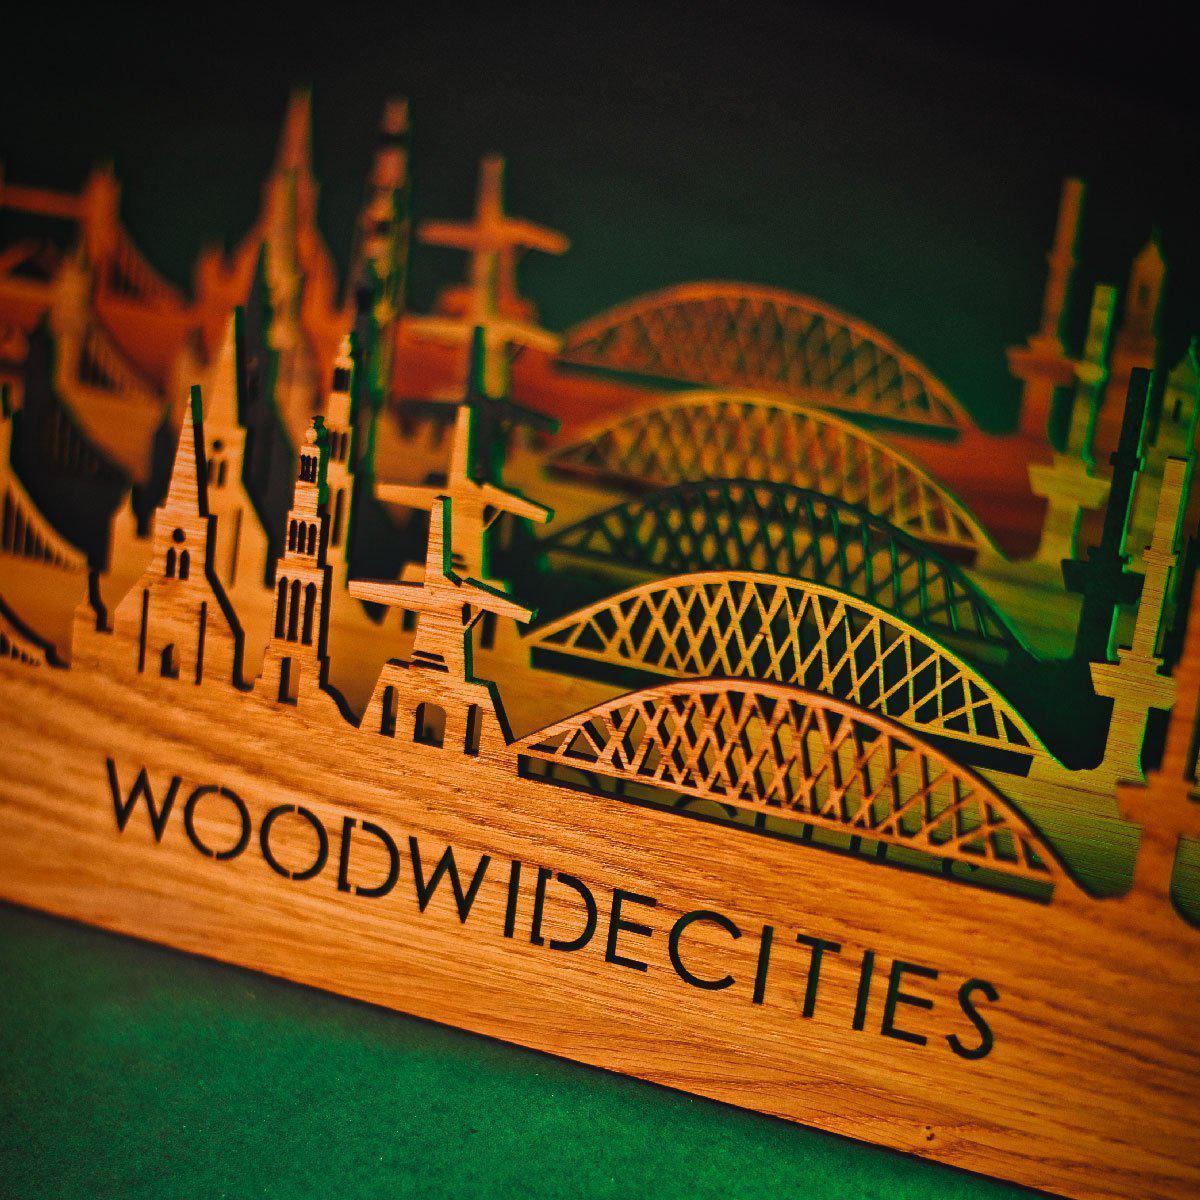 Skyline Klok Coevorden Noten houten cadeau wanddecoratie relatiegeschenk van WoodWideCities